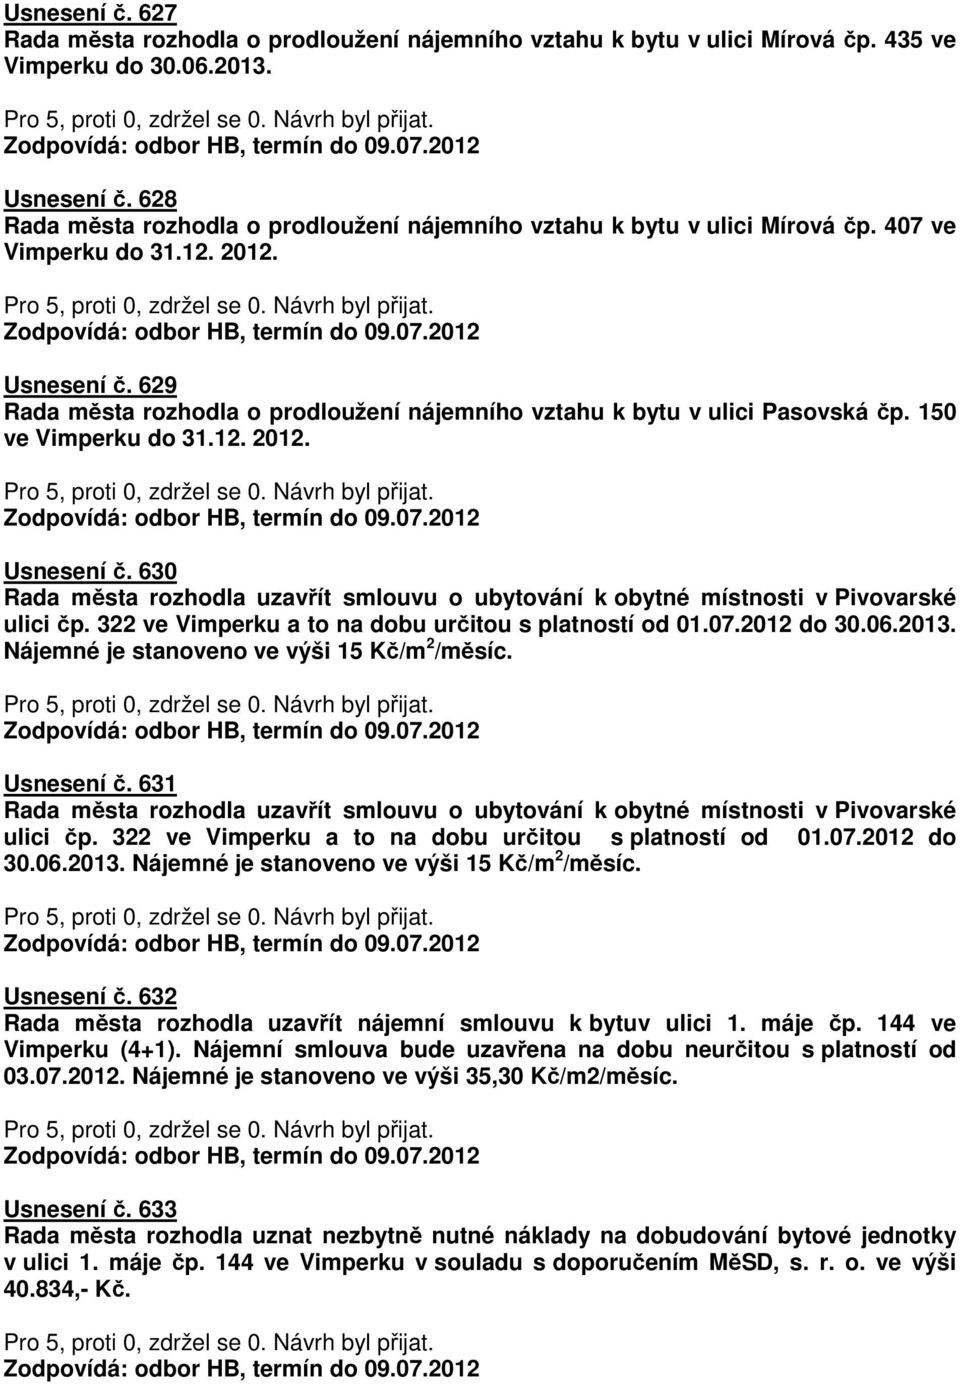 629 Rada města rozhodla o prodloužení nájemního vztahu k bytu v ulici Pasovská čp. 150 ve Vimperku do 31.12. 2012. Usnesení č.